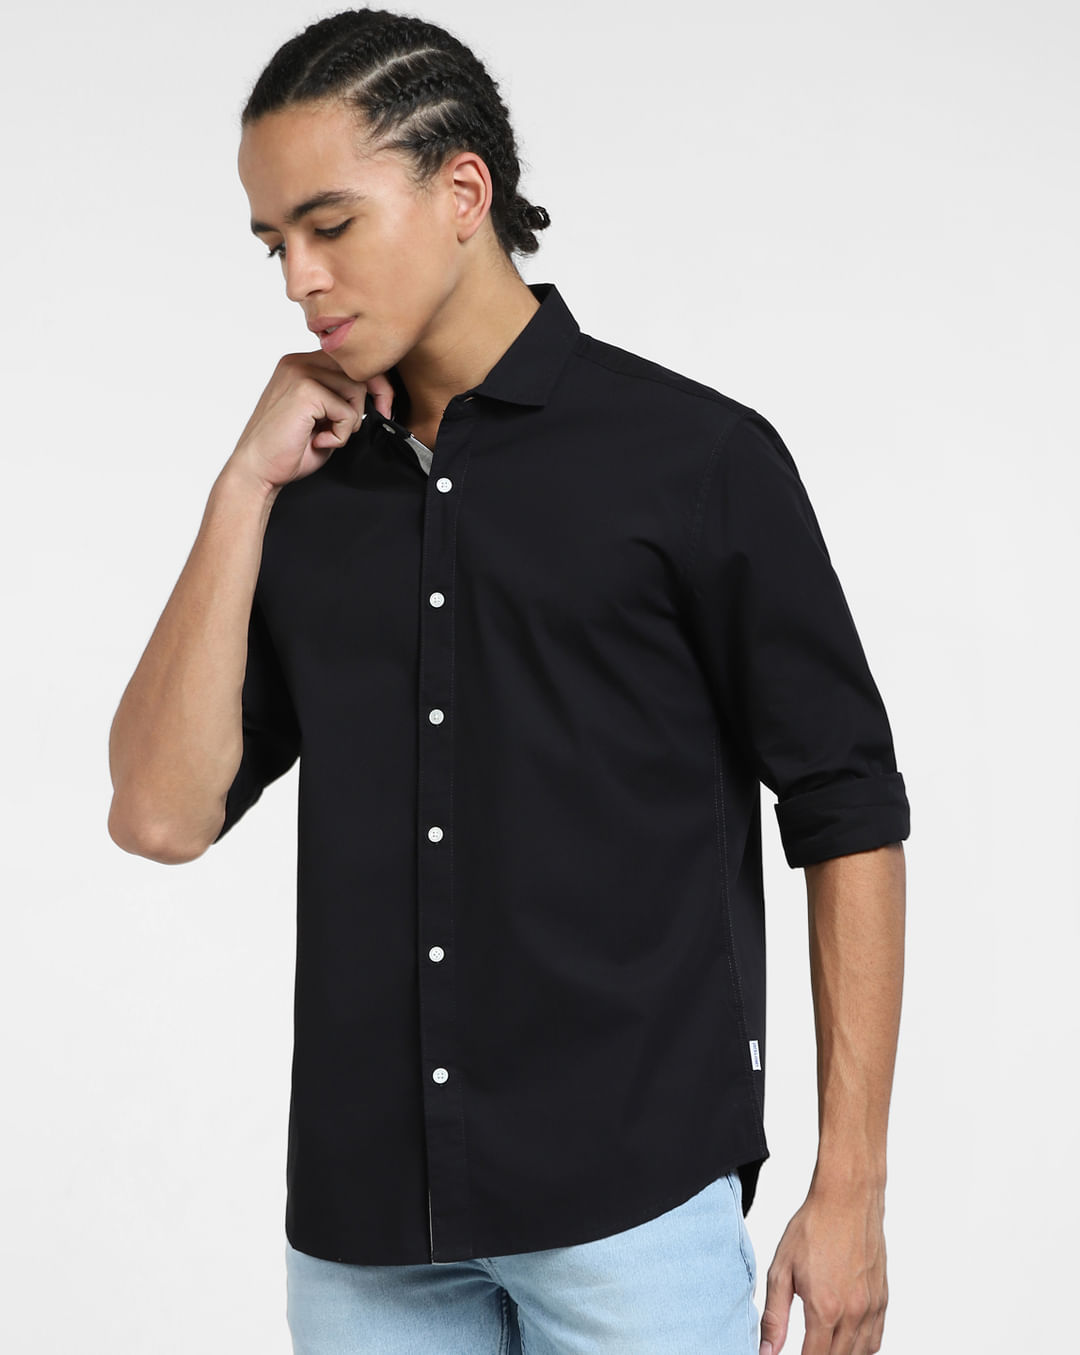 Buy Black Full Sleeves Shirt for Men